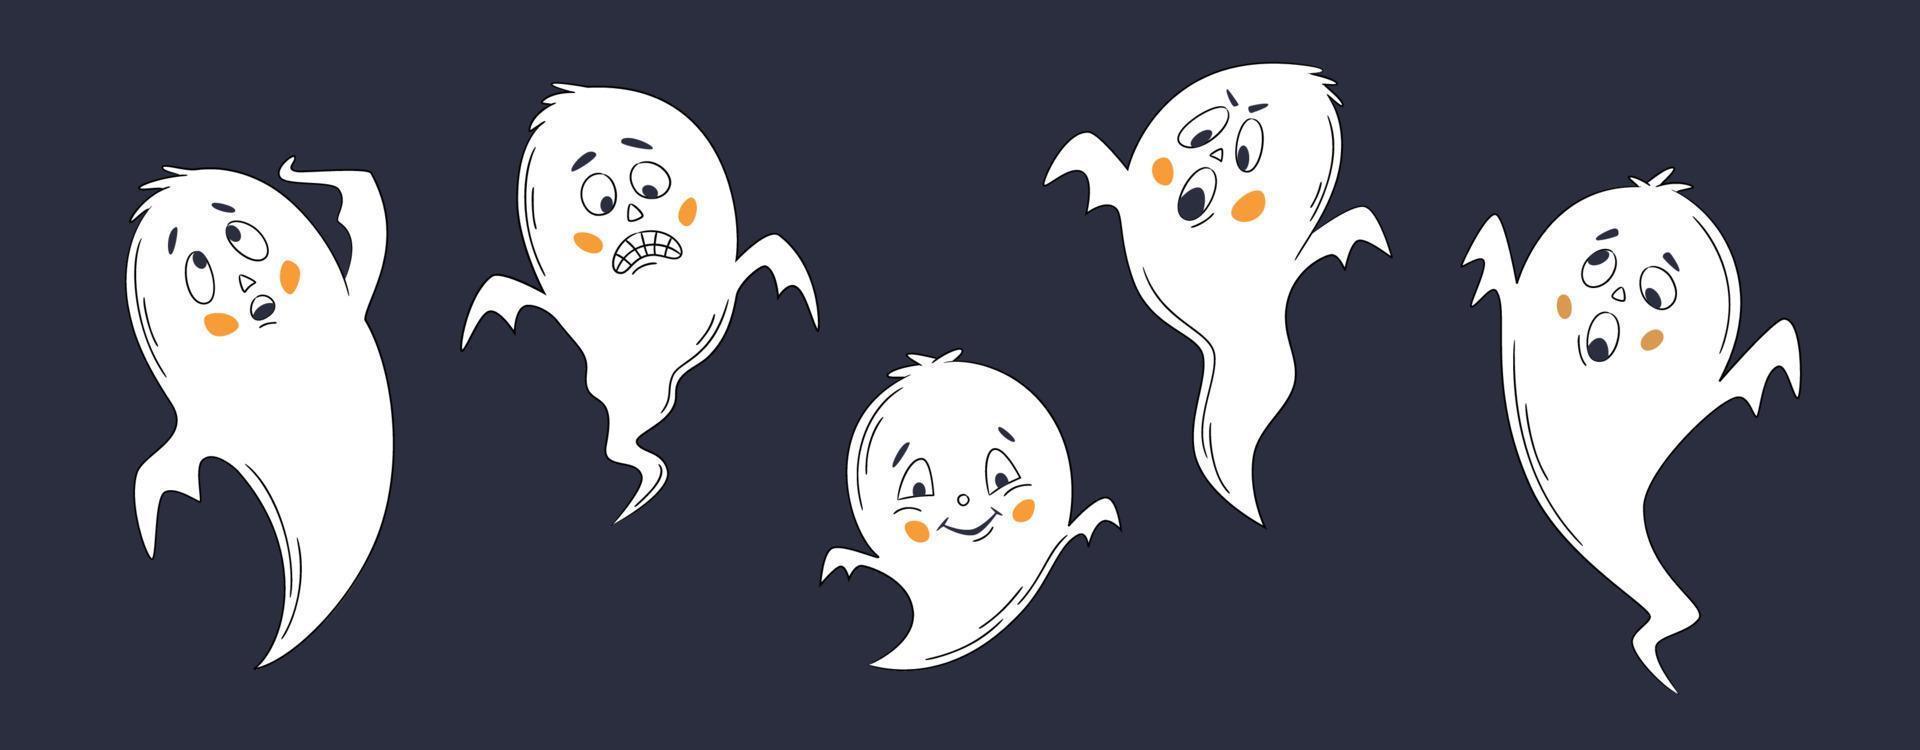 ensemble d'autocollants vectoriels d'halloween. une ligne de fantômes d'émoticônes d'halloween dessinés à la main. drôles de petits fantômes mignons. doodle pour logo, affiche, emblème. style de bande dessinée vecteur